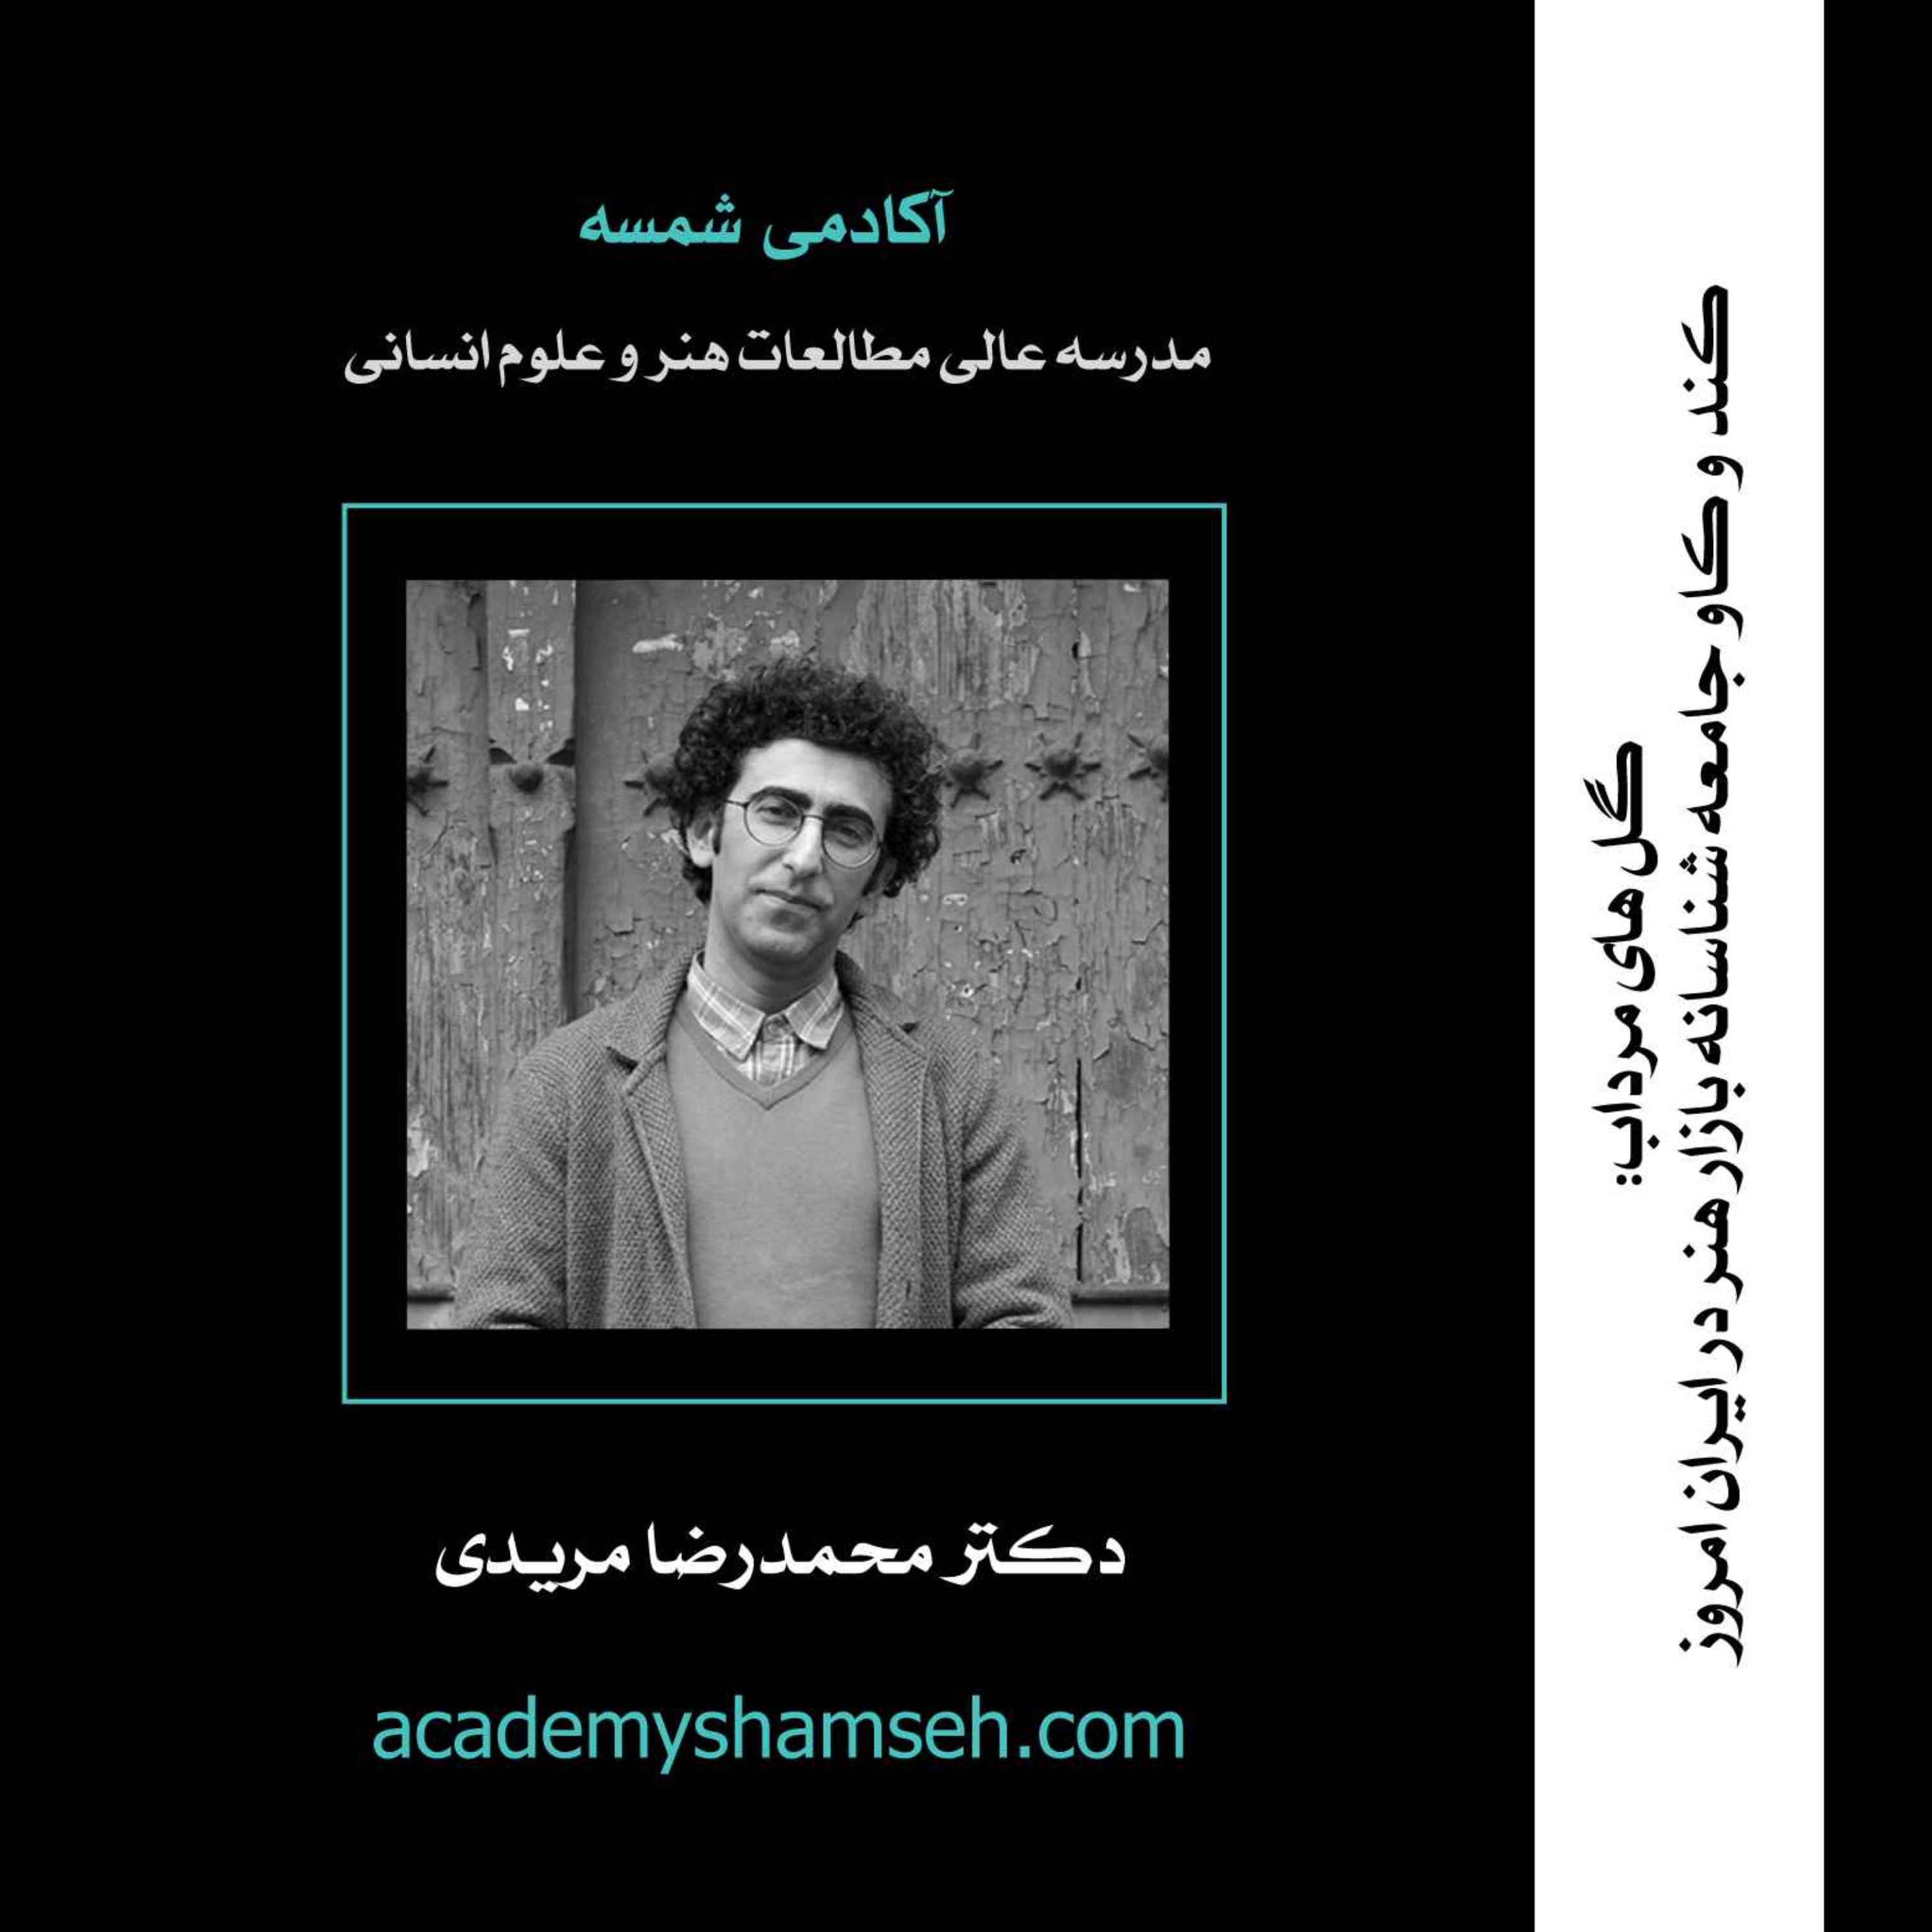 گل های مرداب: کند و کاو جامعه شناسانه بازار هنر در ایران امروز | دکتر محمدرضا مریدی